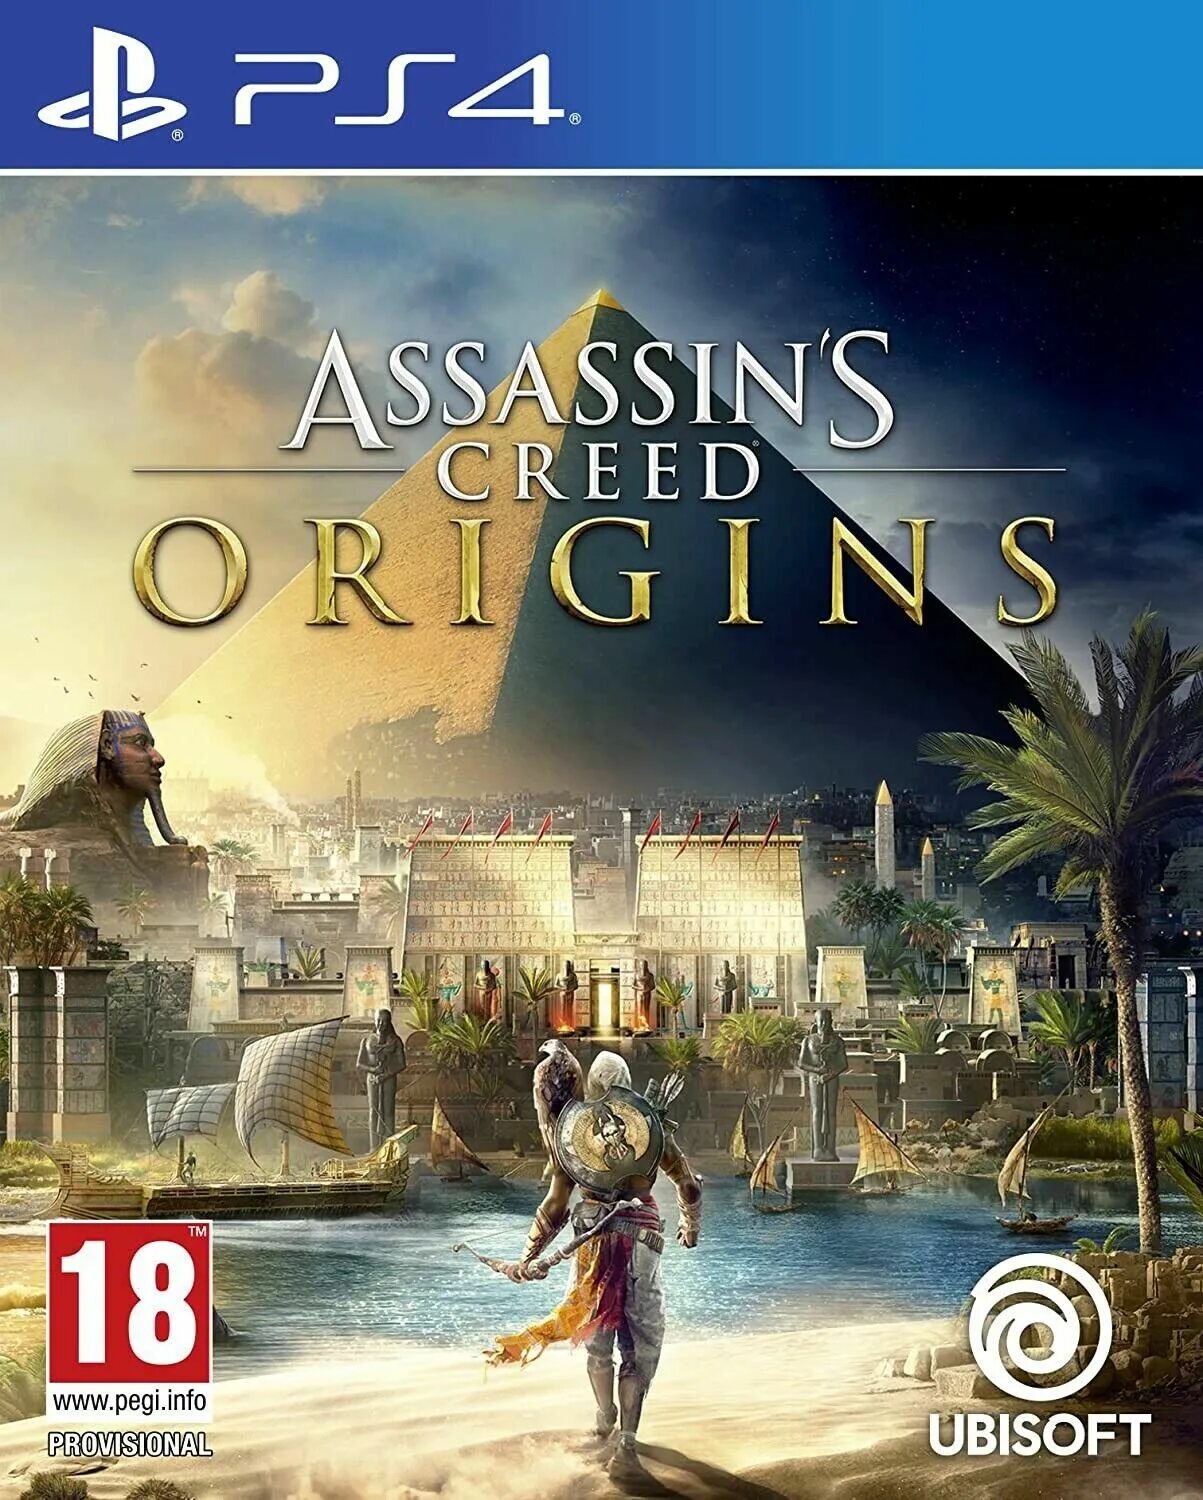 Assassin's Creed Истоки обложка. Assassin’s Creed Origins обложка. Купить асасин ориджинс на ПС 4. Assassin’s Creed Identity обложка.